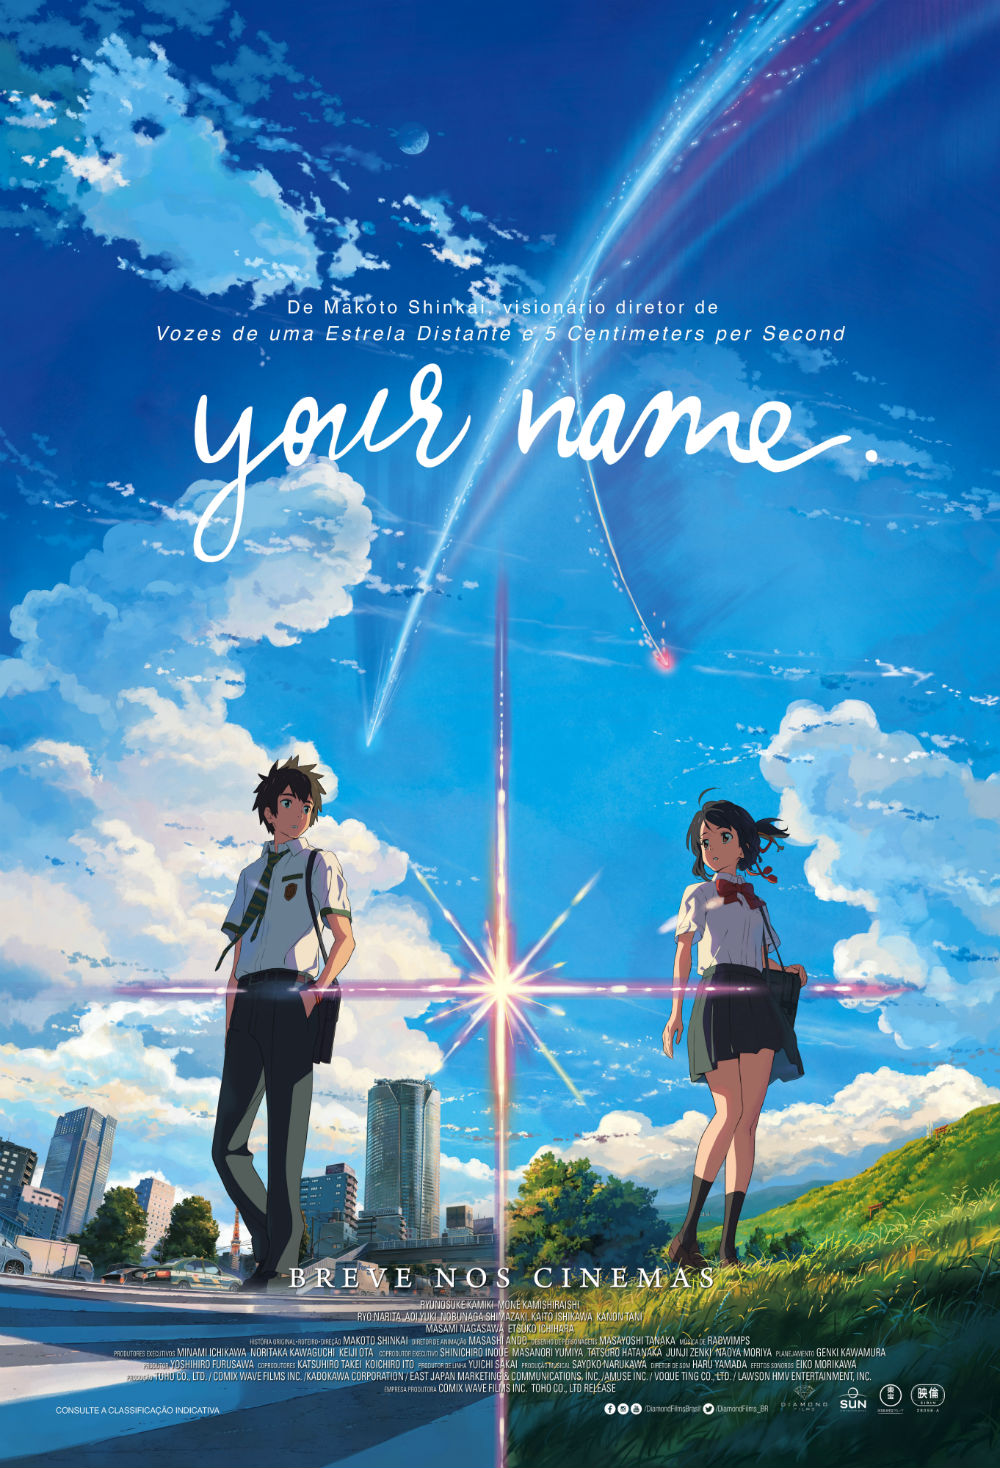 Quase Otome! : [Recomendação de filme - Review] Kimi No Na Wa (Your Name) é  uma das melhores animações do século, segundo eu mesma